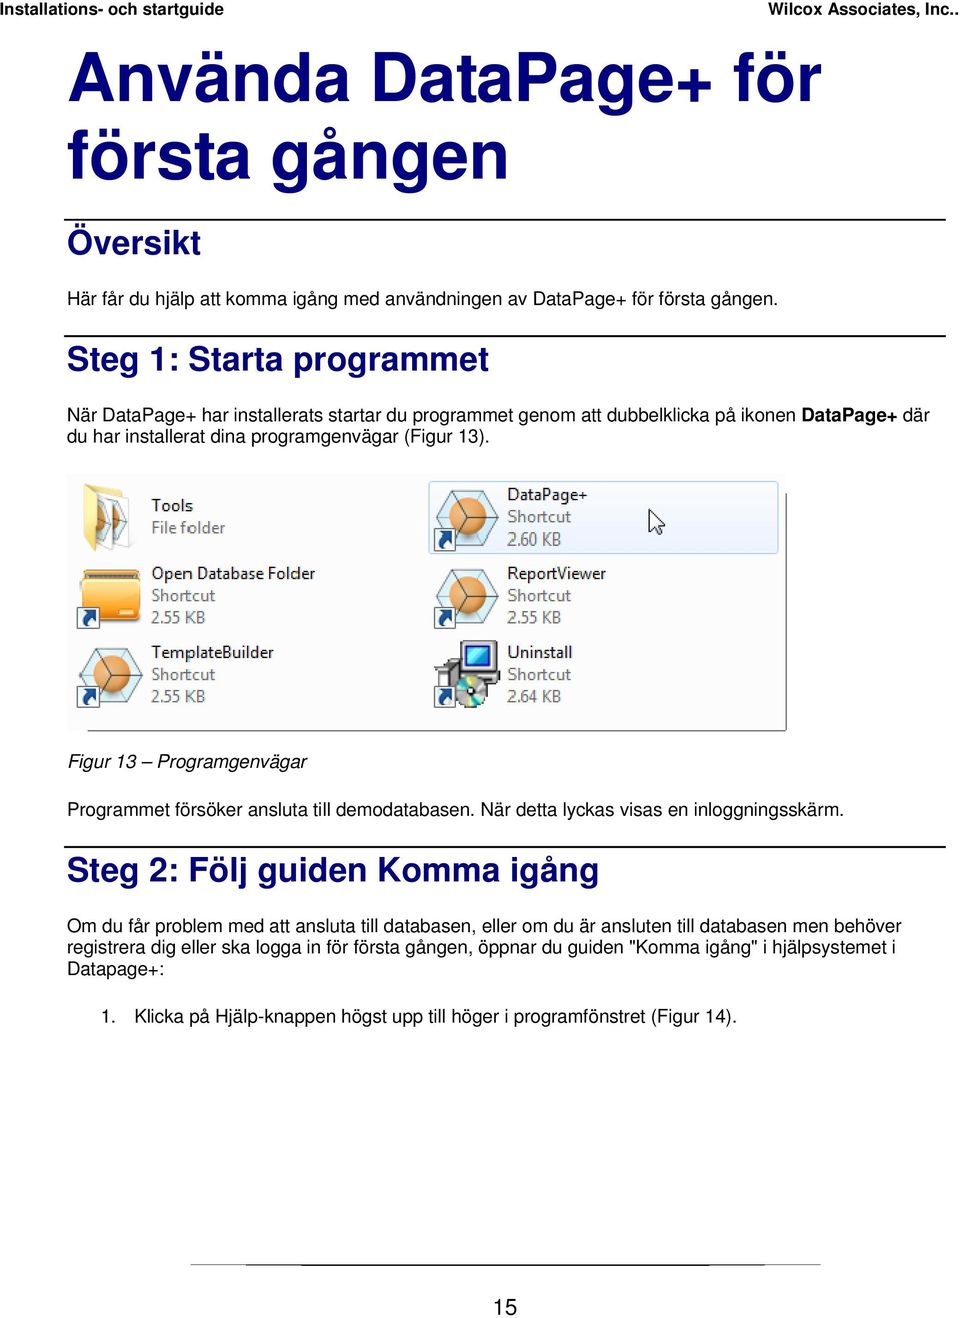 Figur 13 Programgenvägar Programmet försöker ansluta till demodatabasen. När detta lyckas visas en inloggningsskärm.